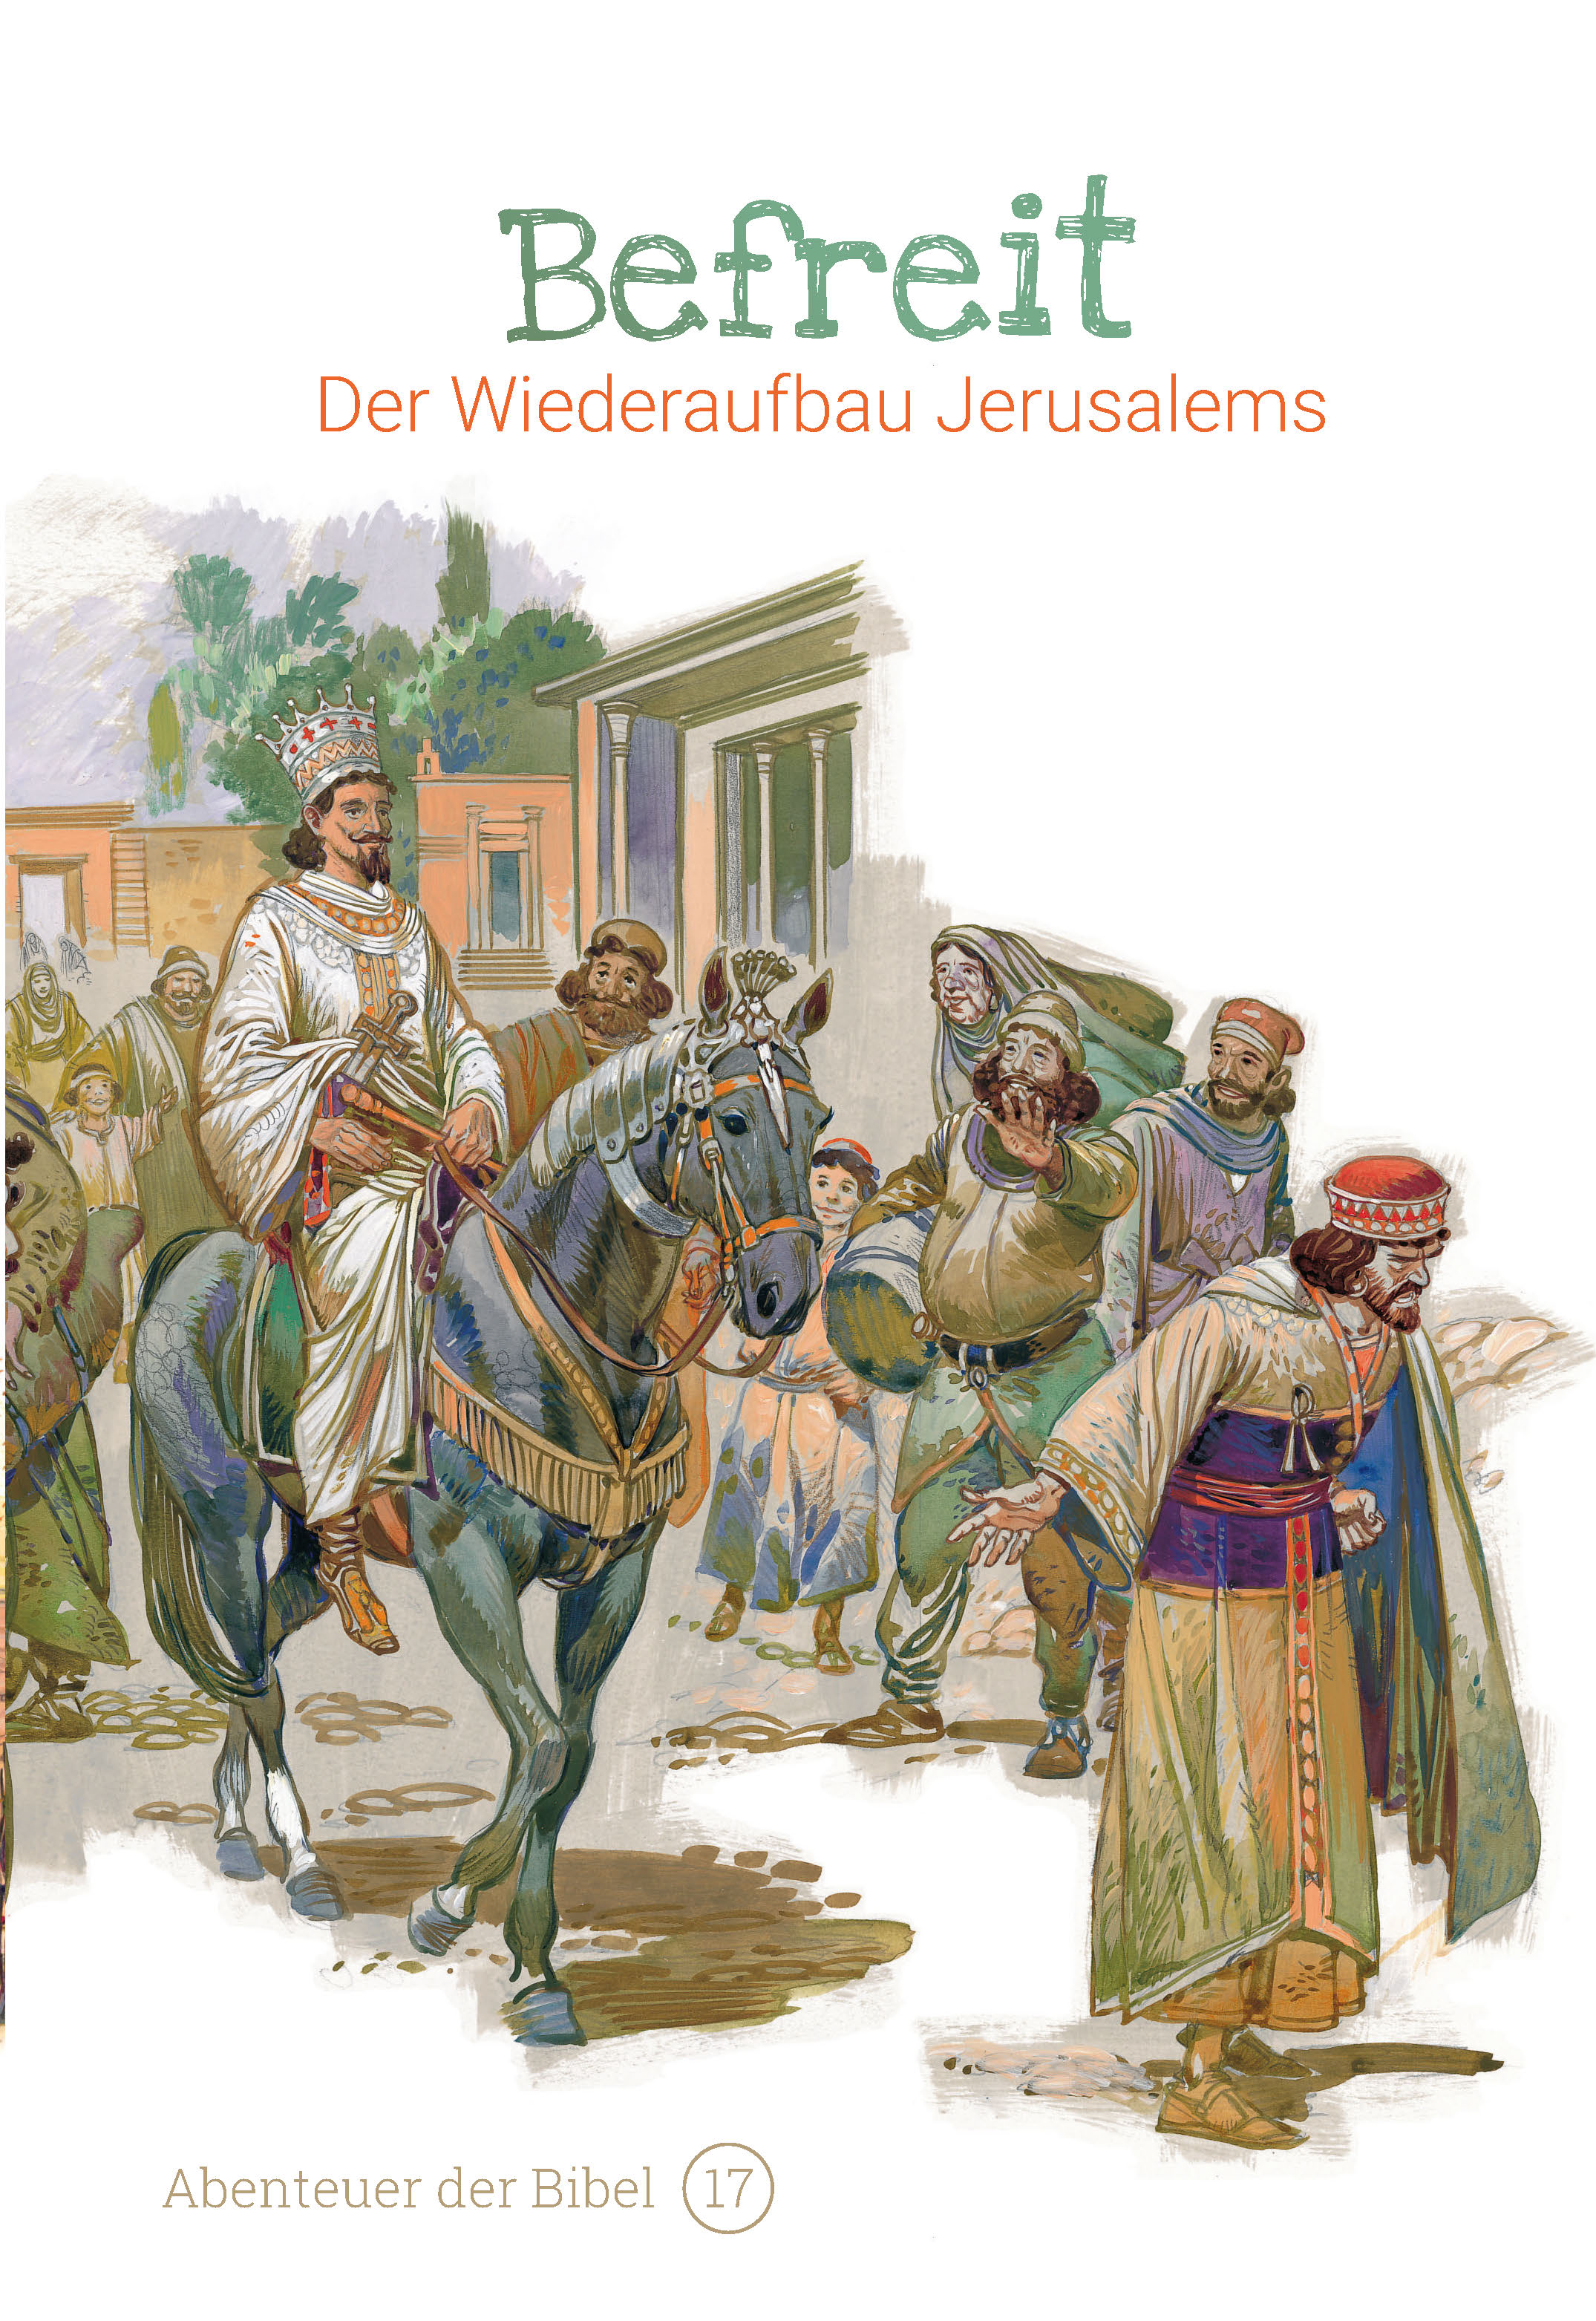 Befreit - Der Wiederaufbau Jerusalems (Abenteuer der Bibel - Band 17)